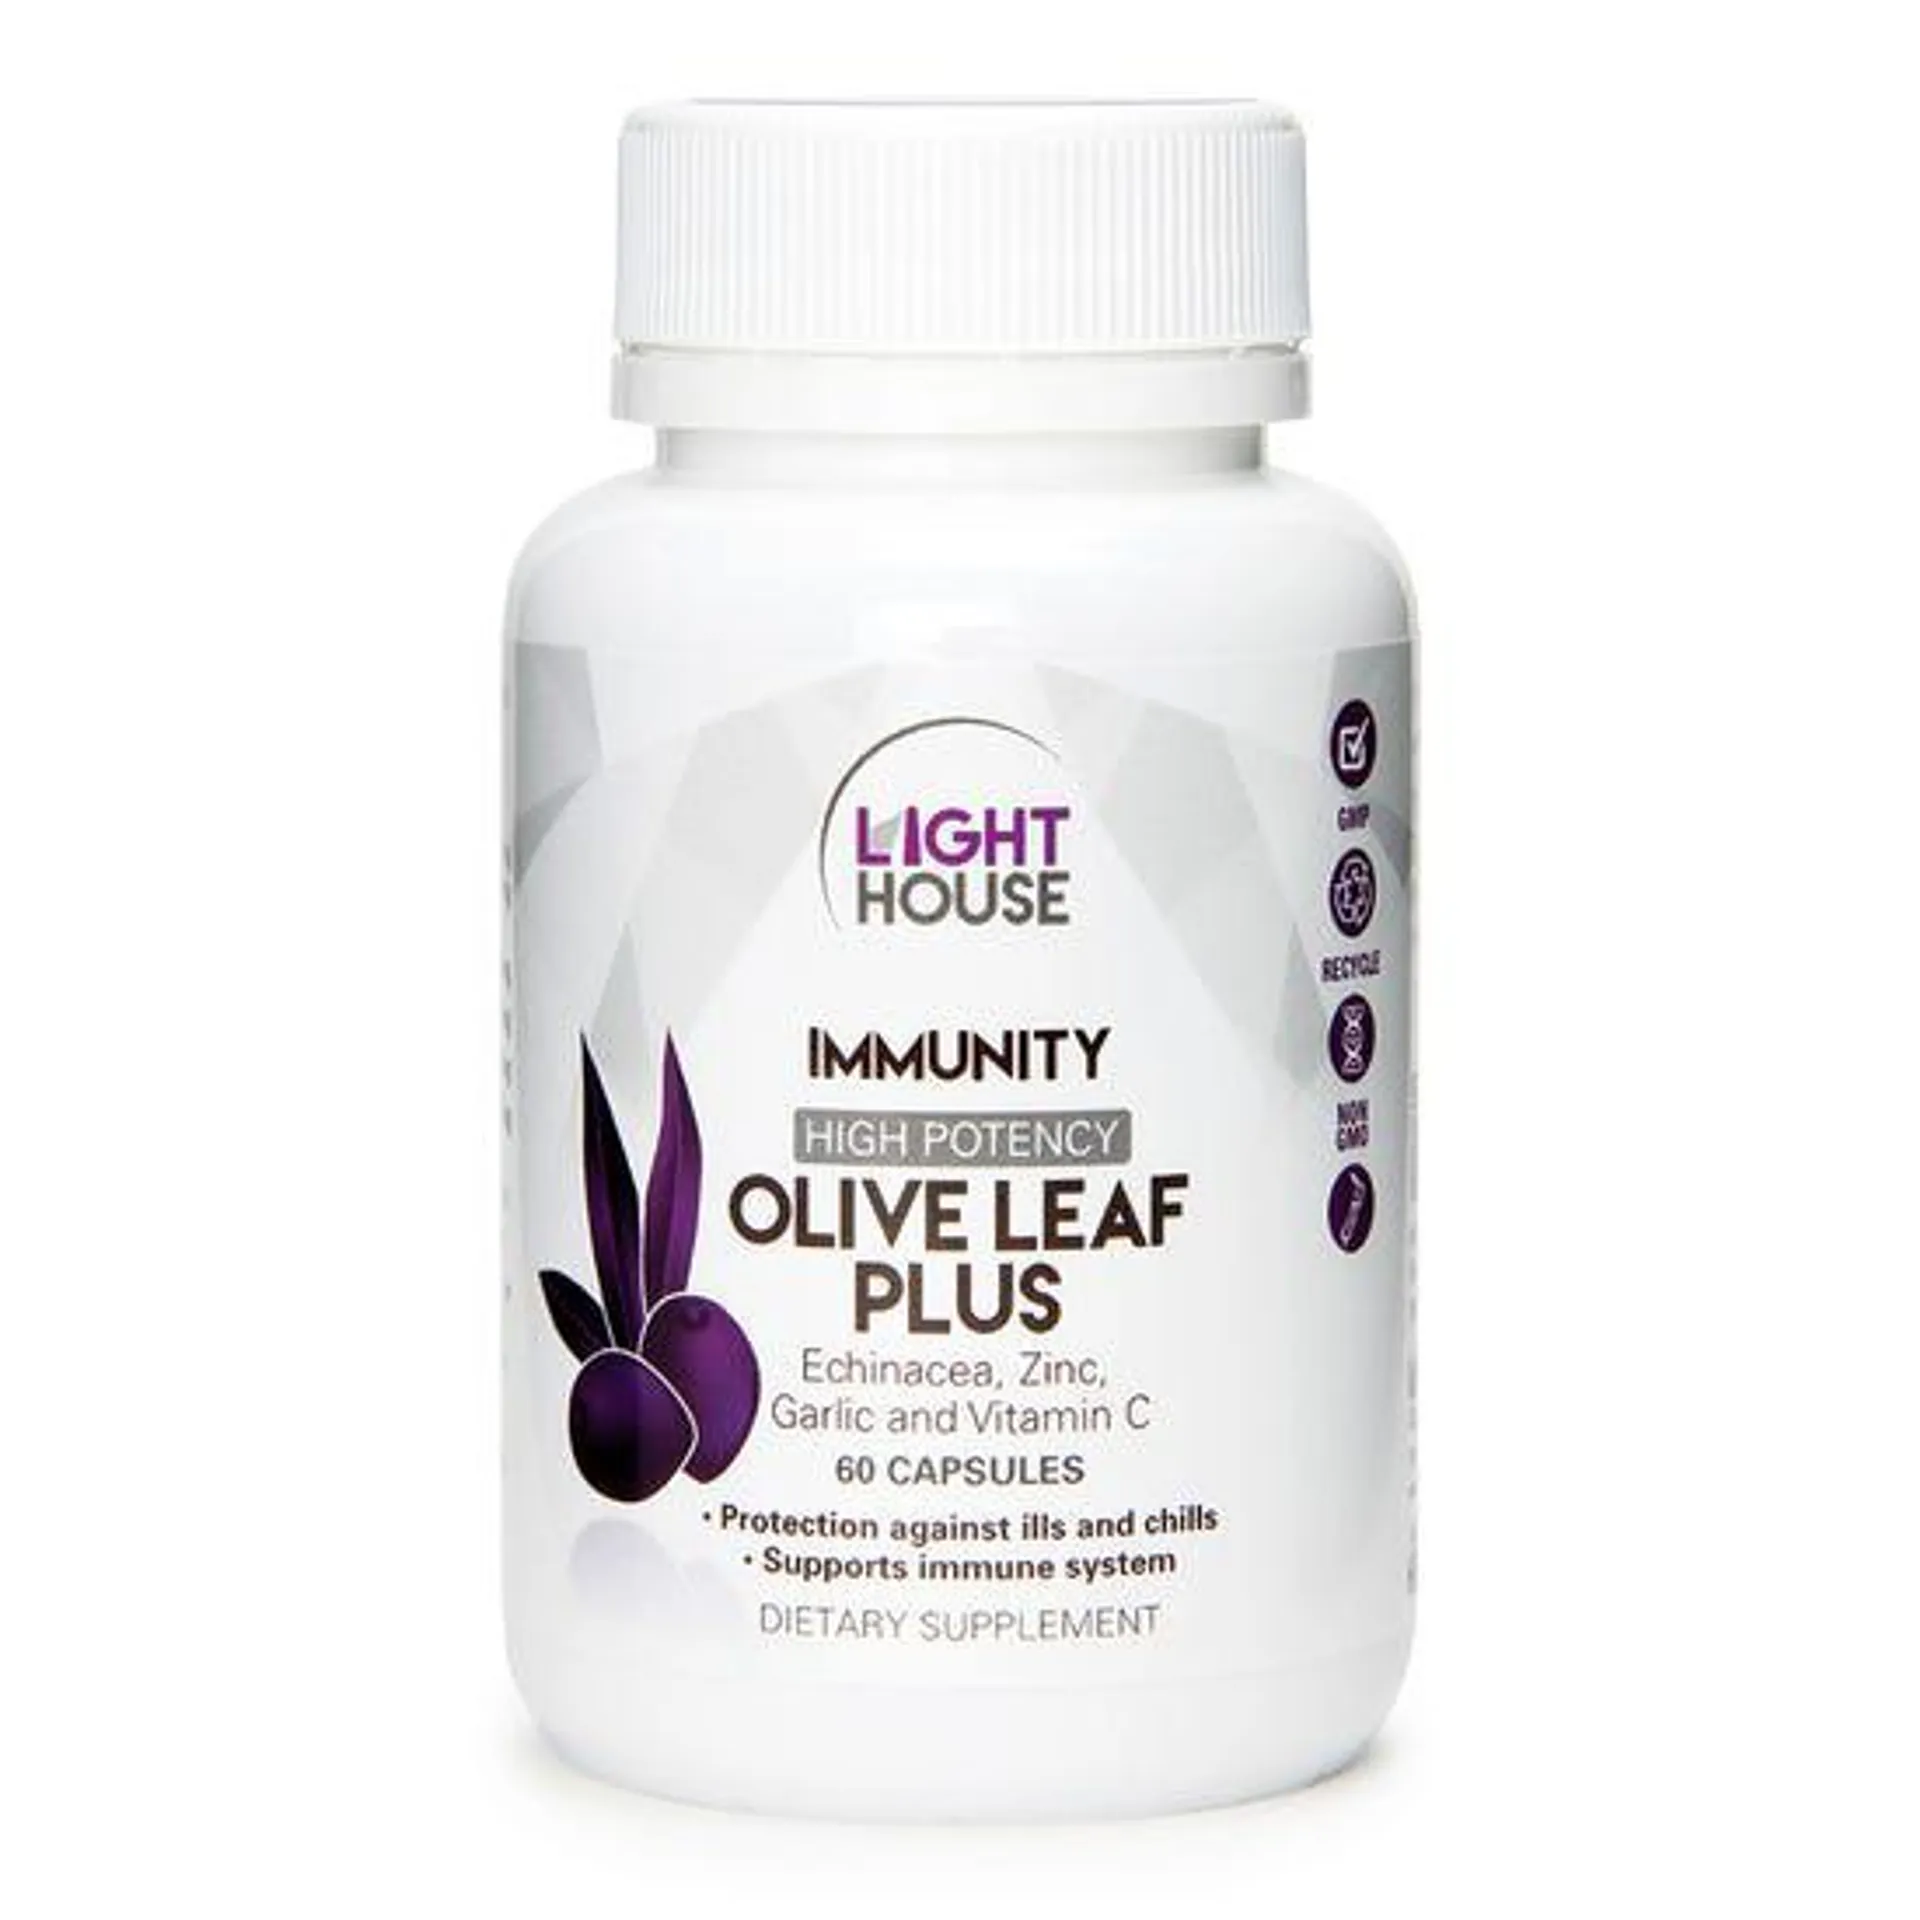 Olive Leaf Plus